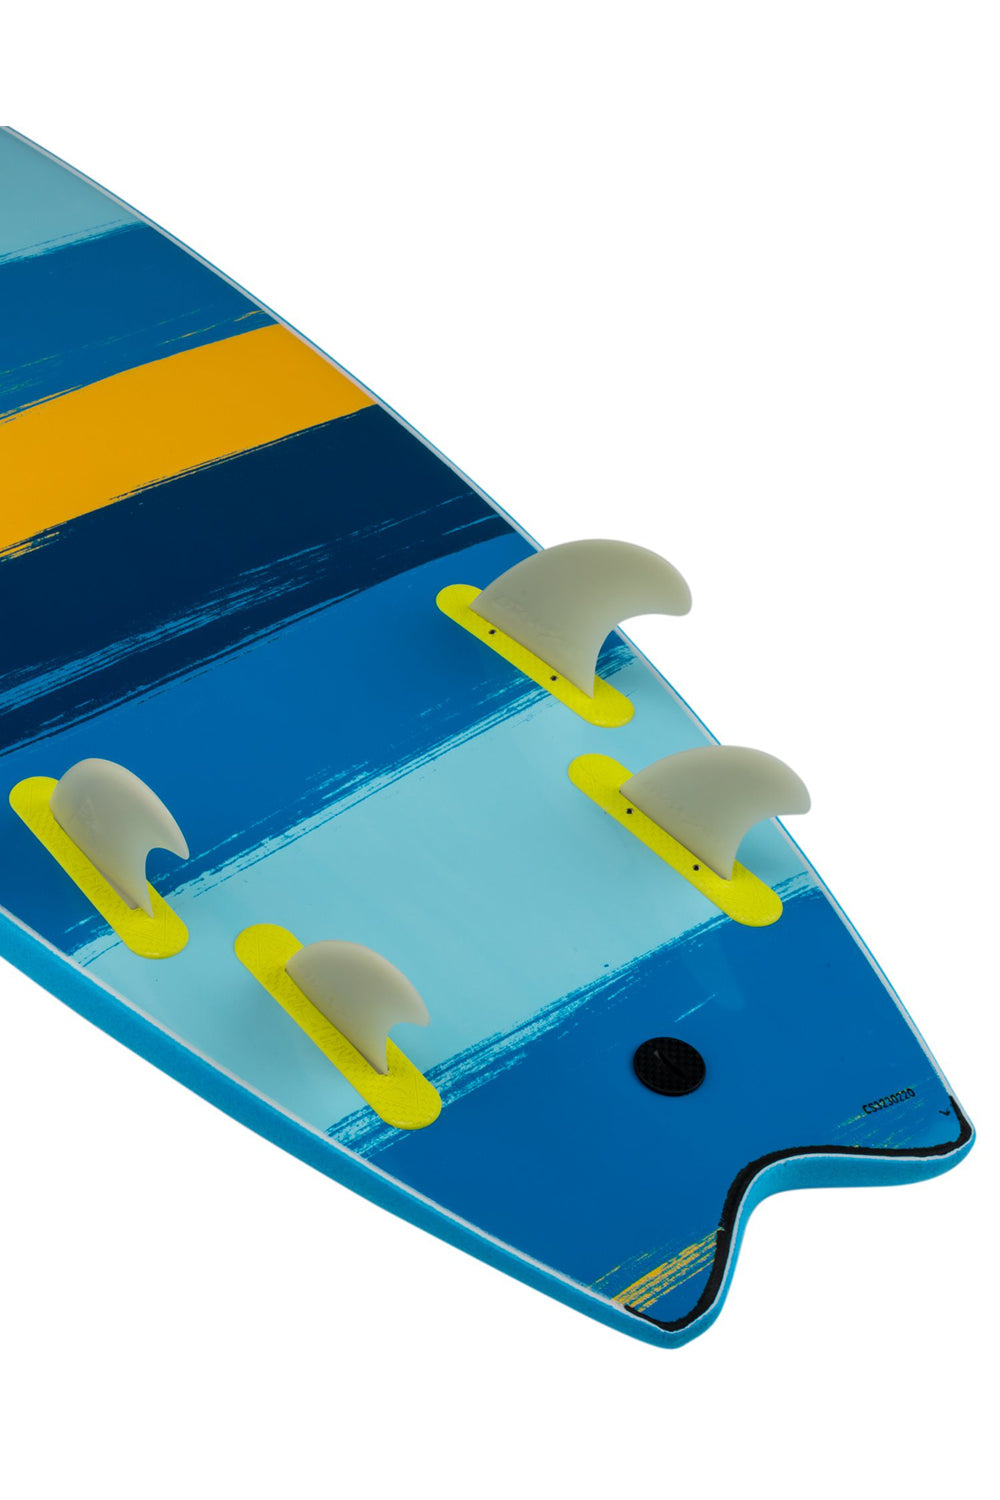 Catch Surf Odysea Skipper Quad - Cool Blue